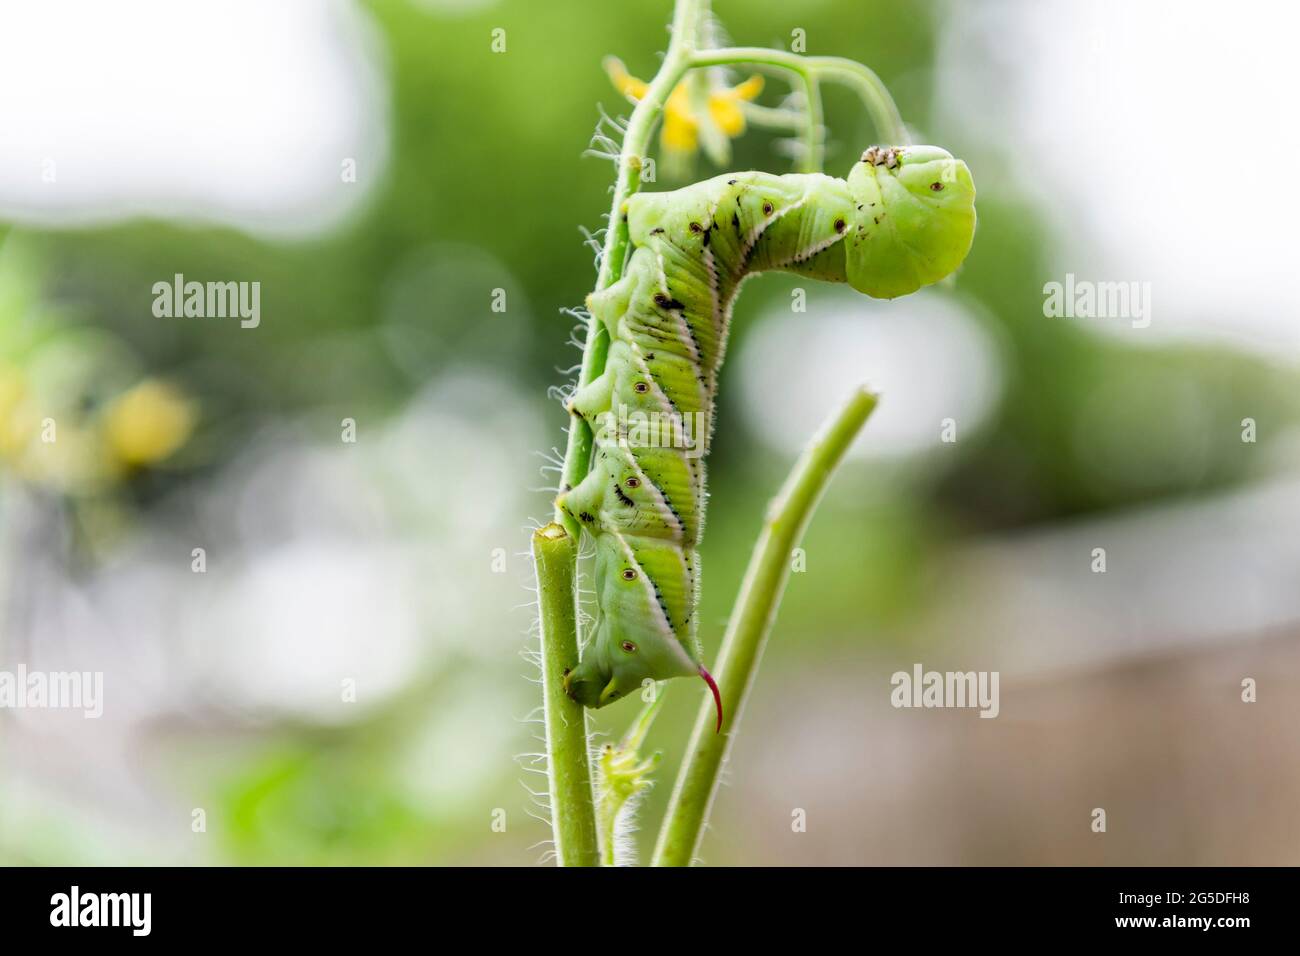 Il Tobacco Hornworm con la testa si rialleva in posizione difensiva mentre si teneva su uno stelo di pianta di pomodoro. Foto Stock